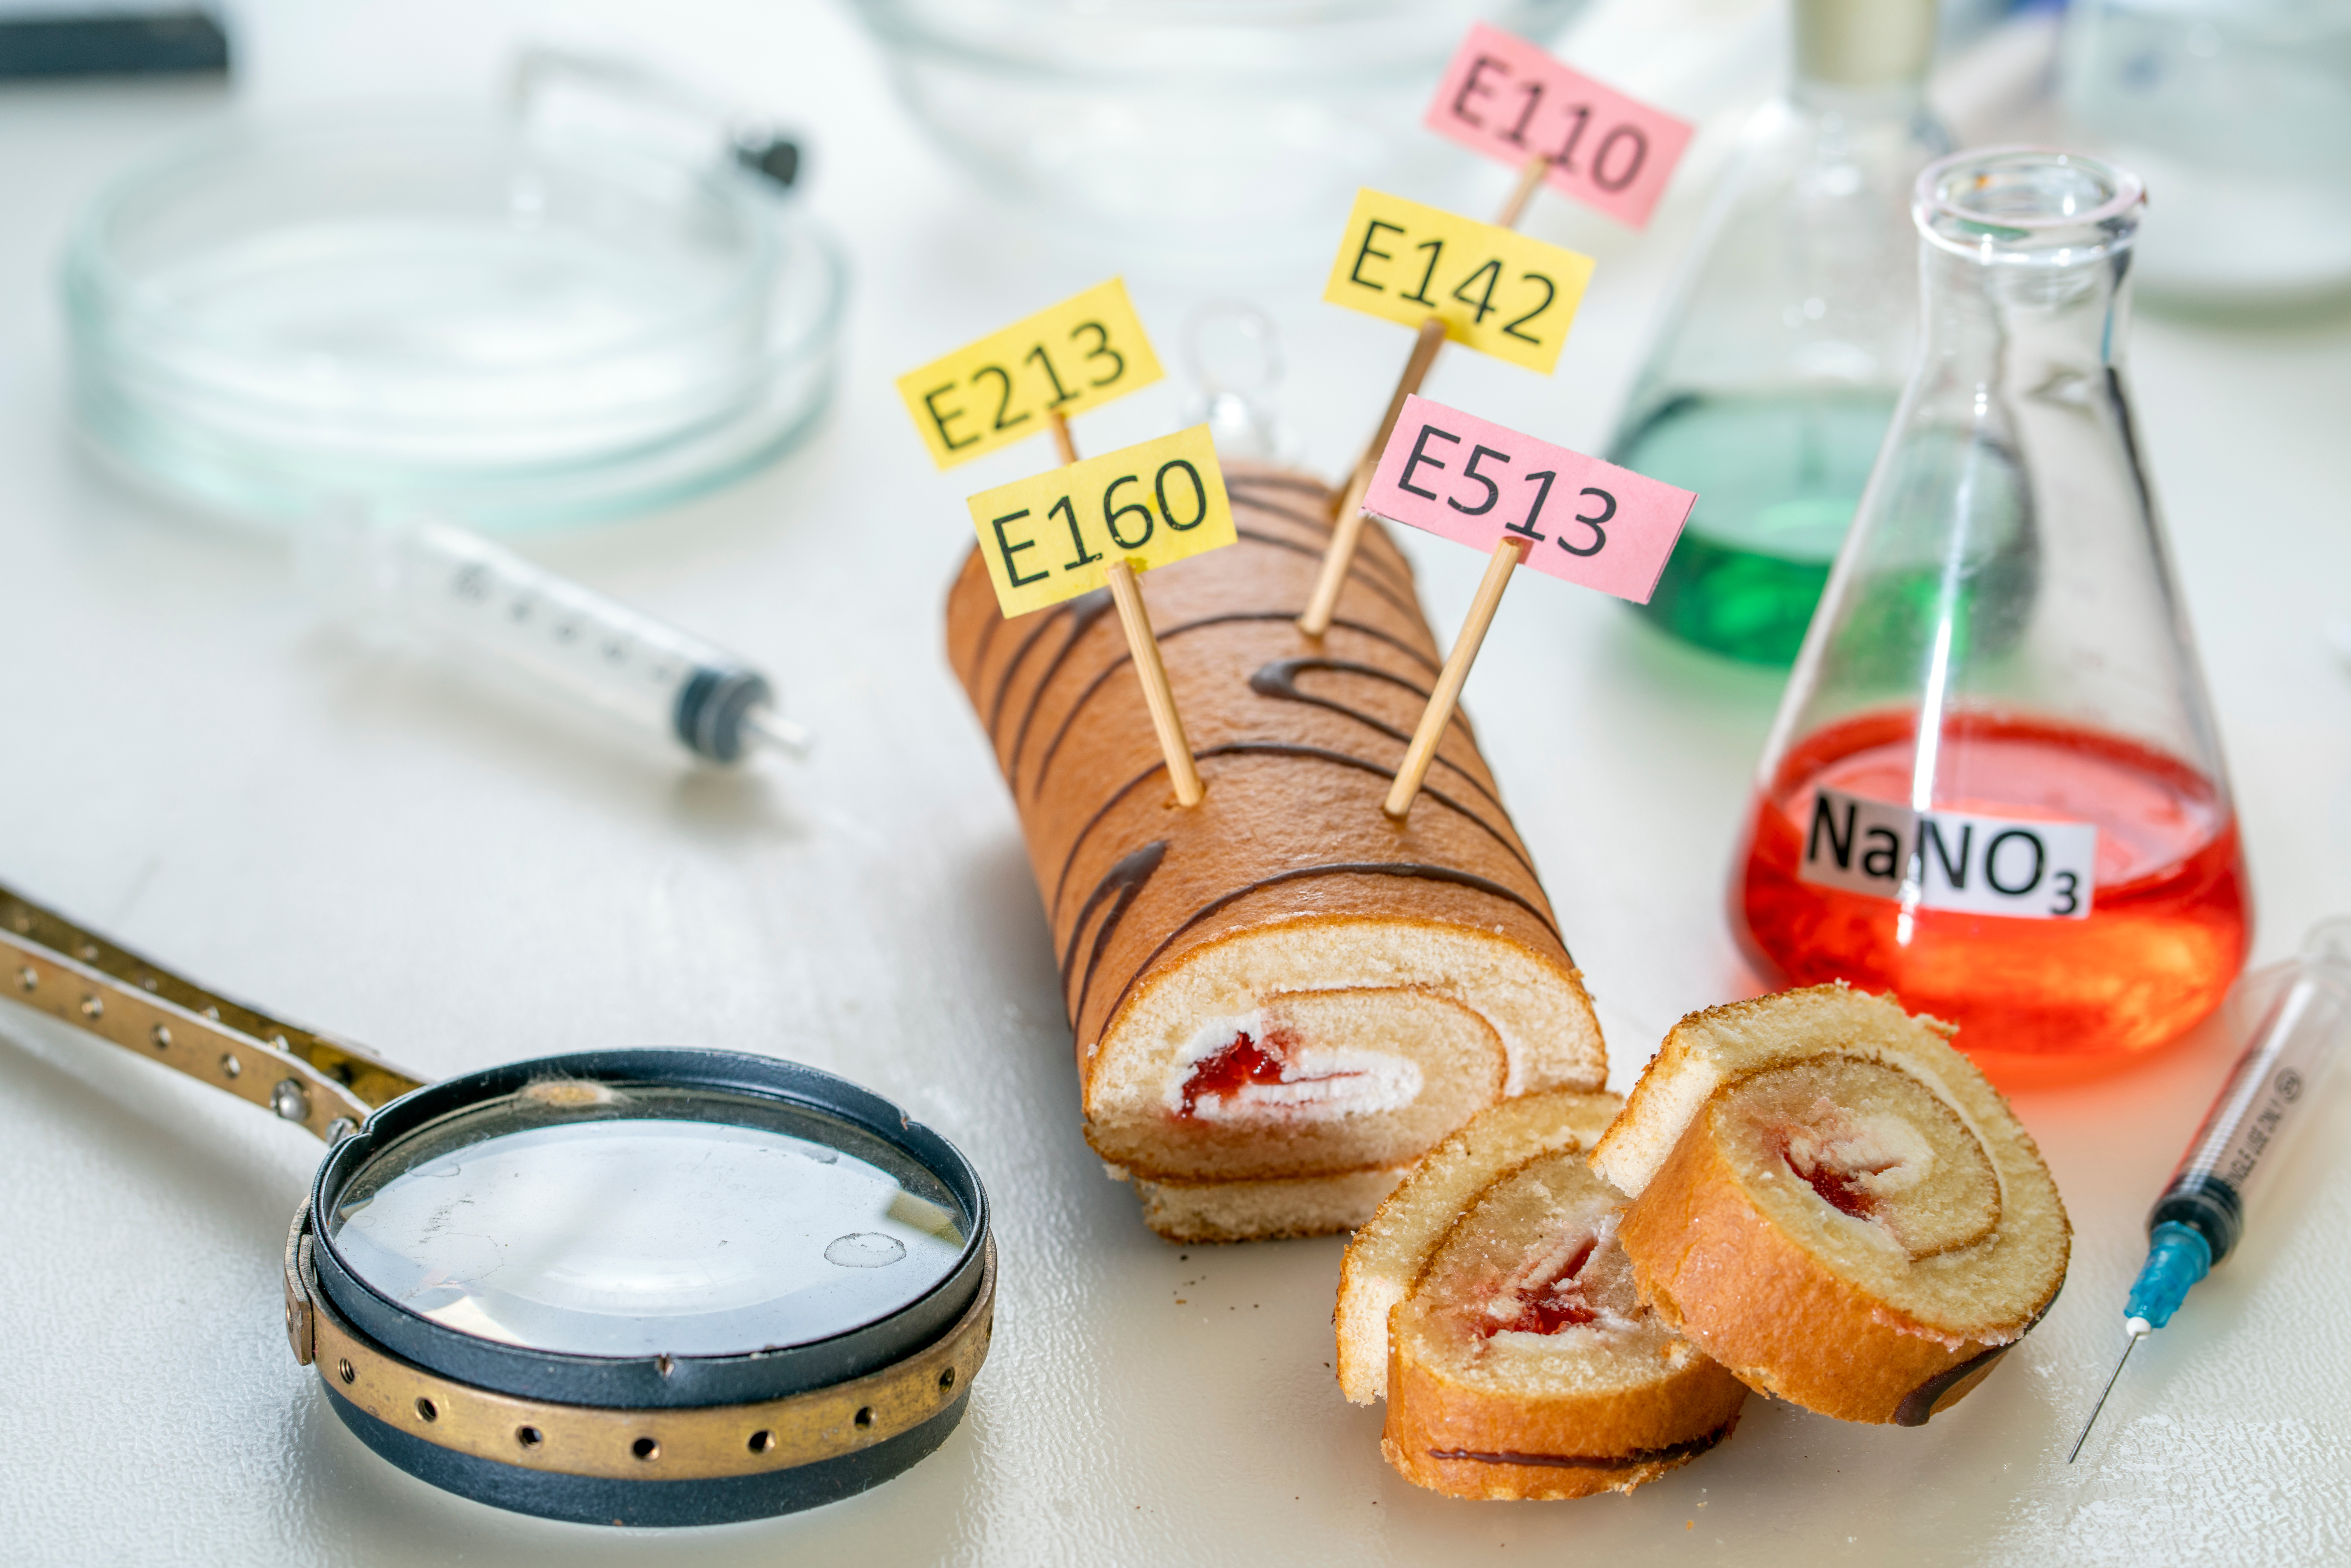 Une consommation élevée d'émulsifiants « E », des additifs présents dans de nombreux aliments est associée à un risque accru de maladies cardiovasculaires (Visuel Adobe Stock 481698732)